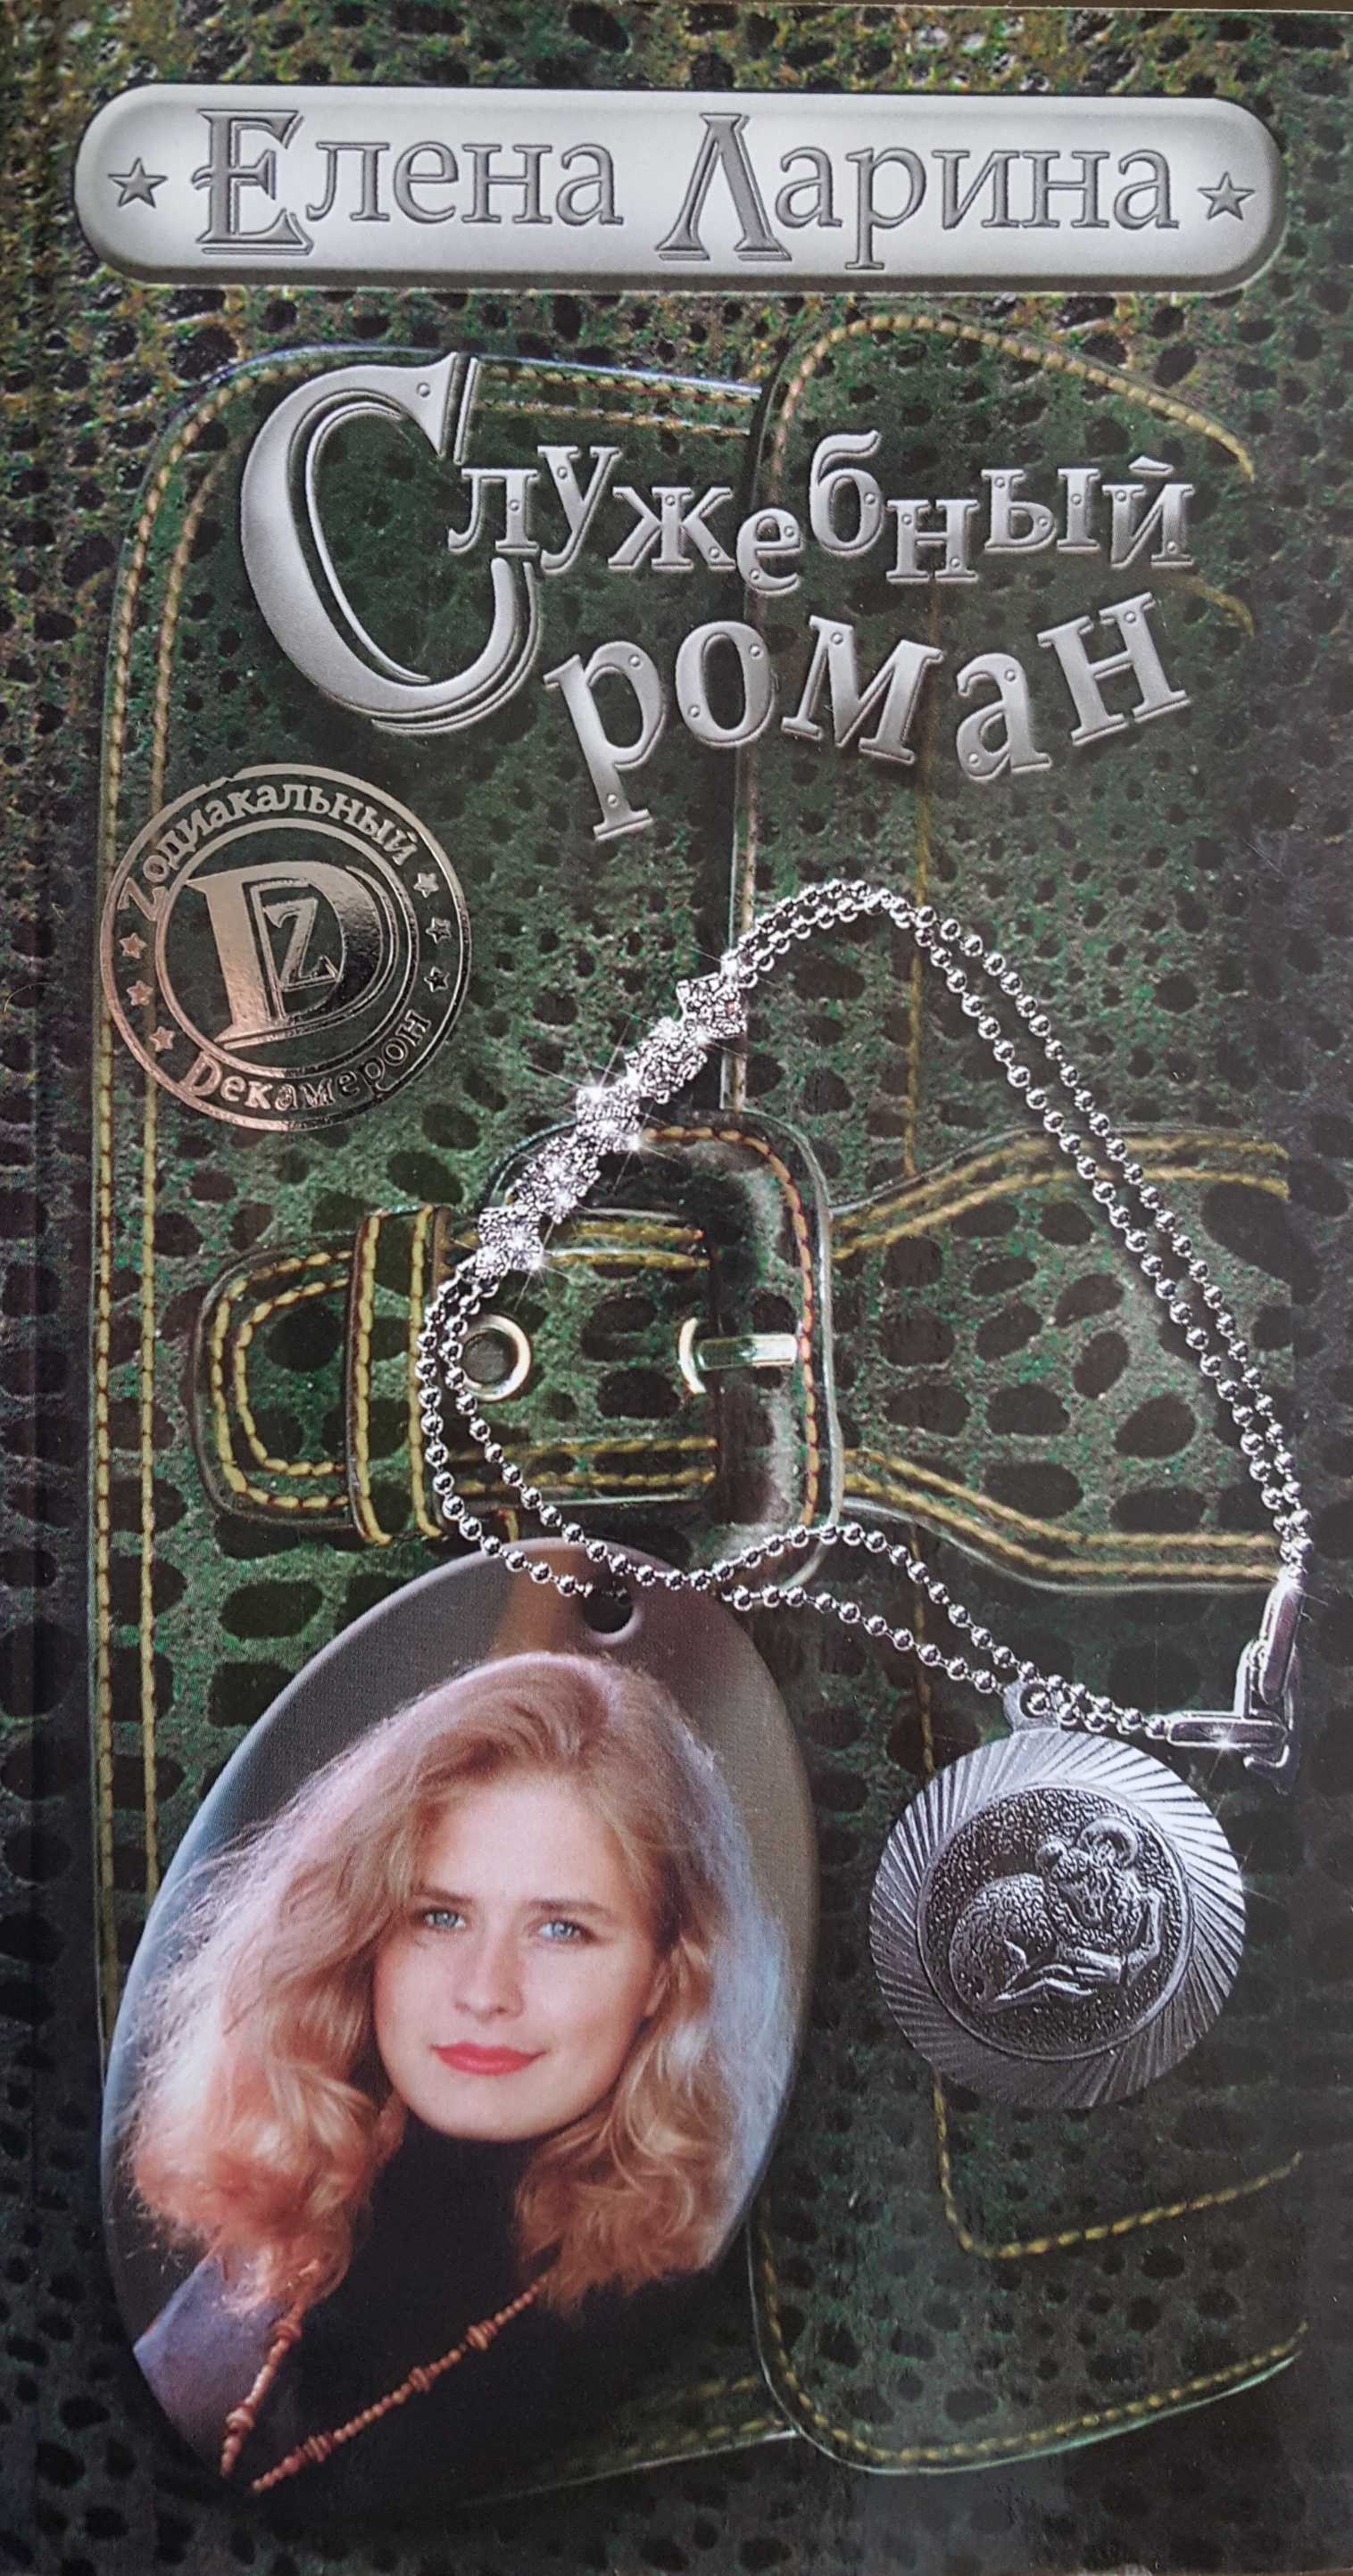 Служебный роман, или История Милы Кулагиной, родившейся под знаком Овена (fb2)